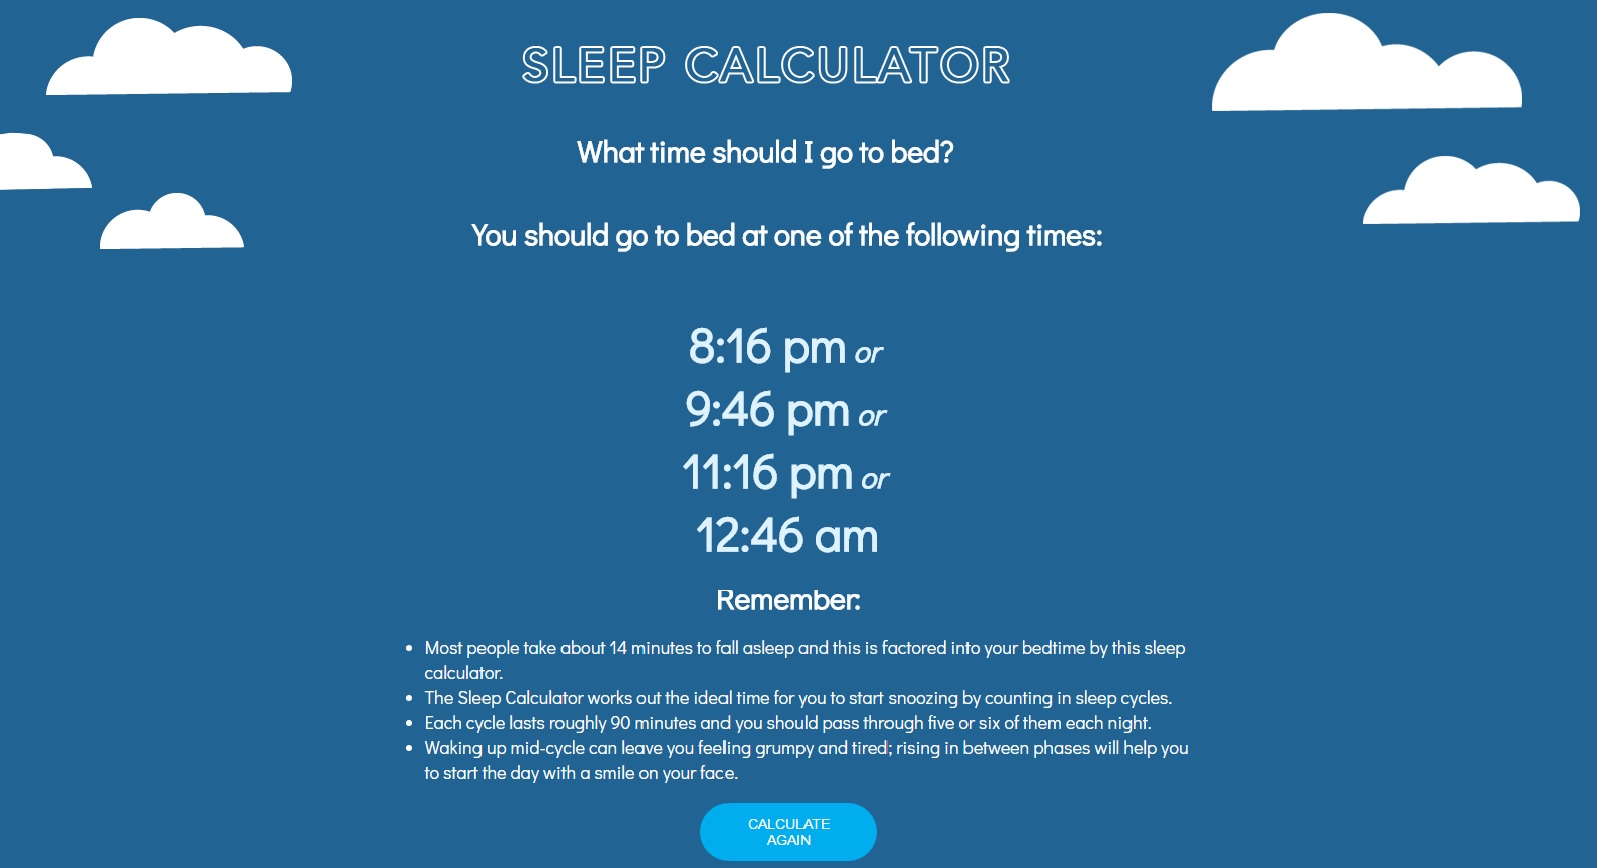 ¿Llegas con sueño al trabajo? Calcula a qué hora deberías irte a la cama para rendir durante el día